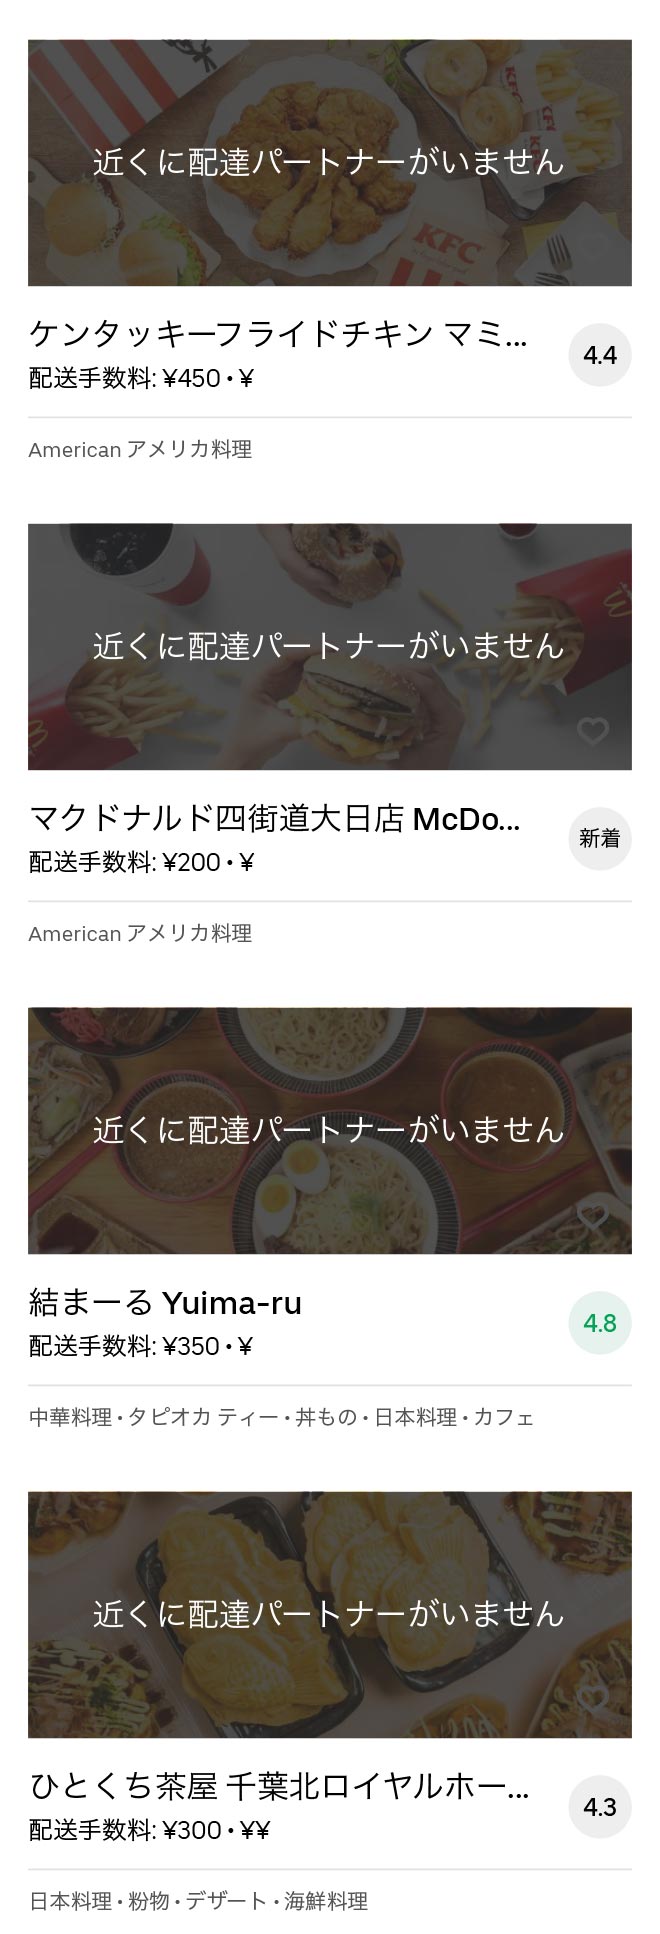 Yotsukaido menu 2008 04